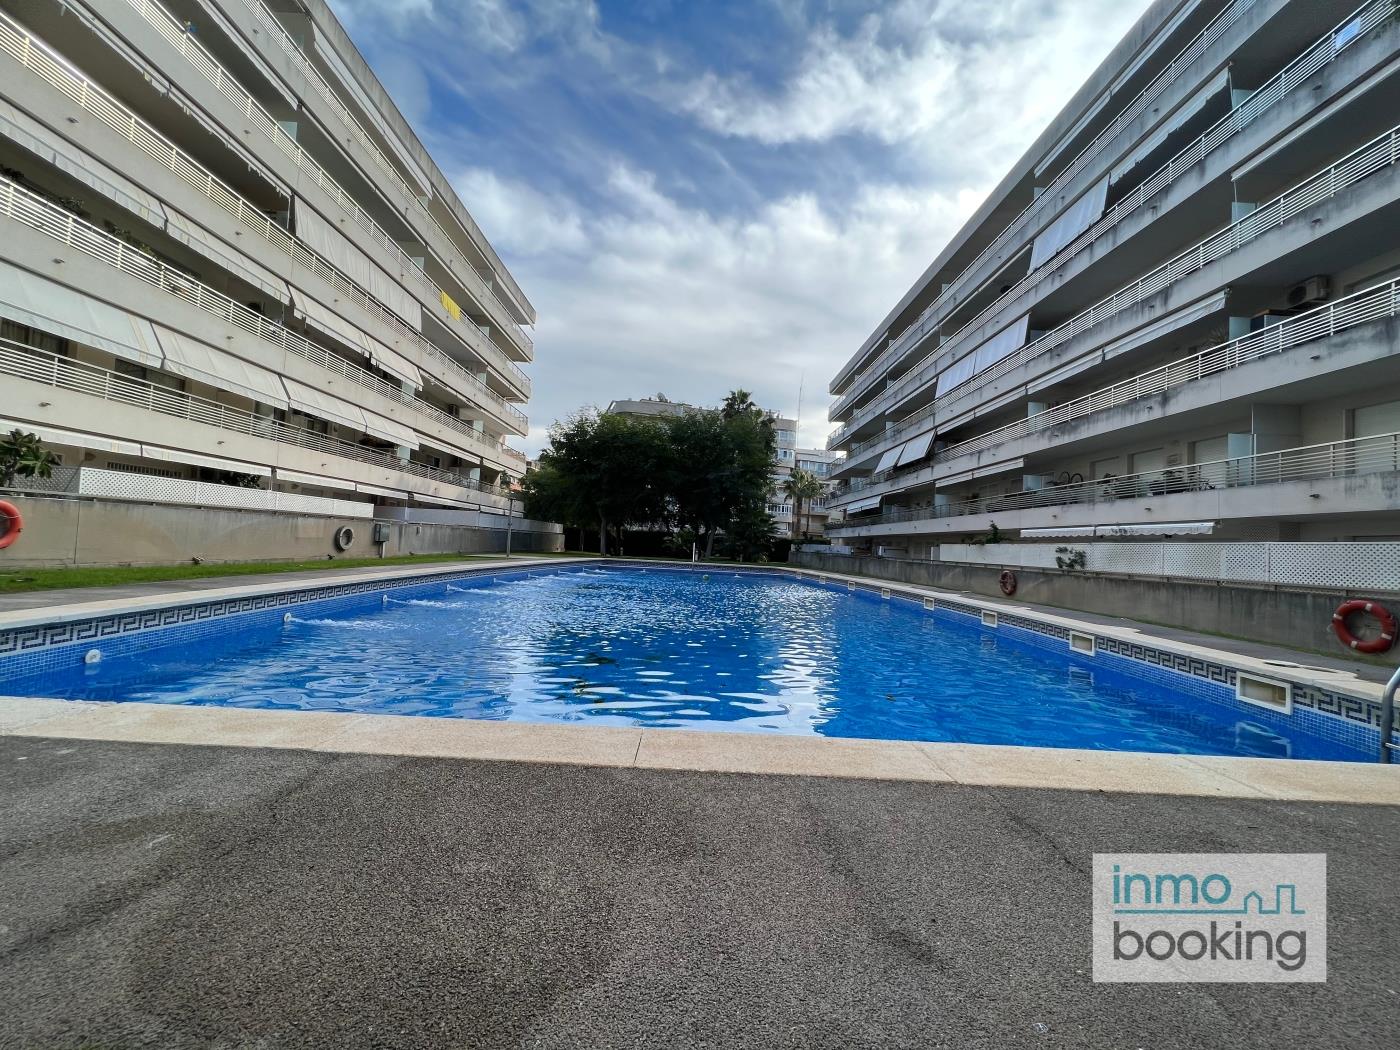 Inmobooking Villa Elvira , amb piscina i aparcament gratuït a salou